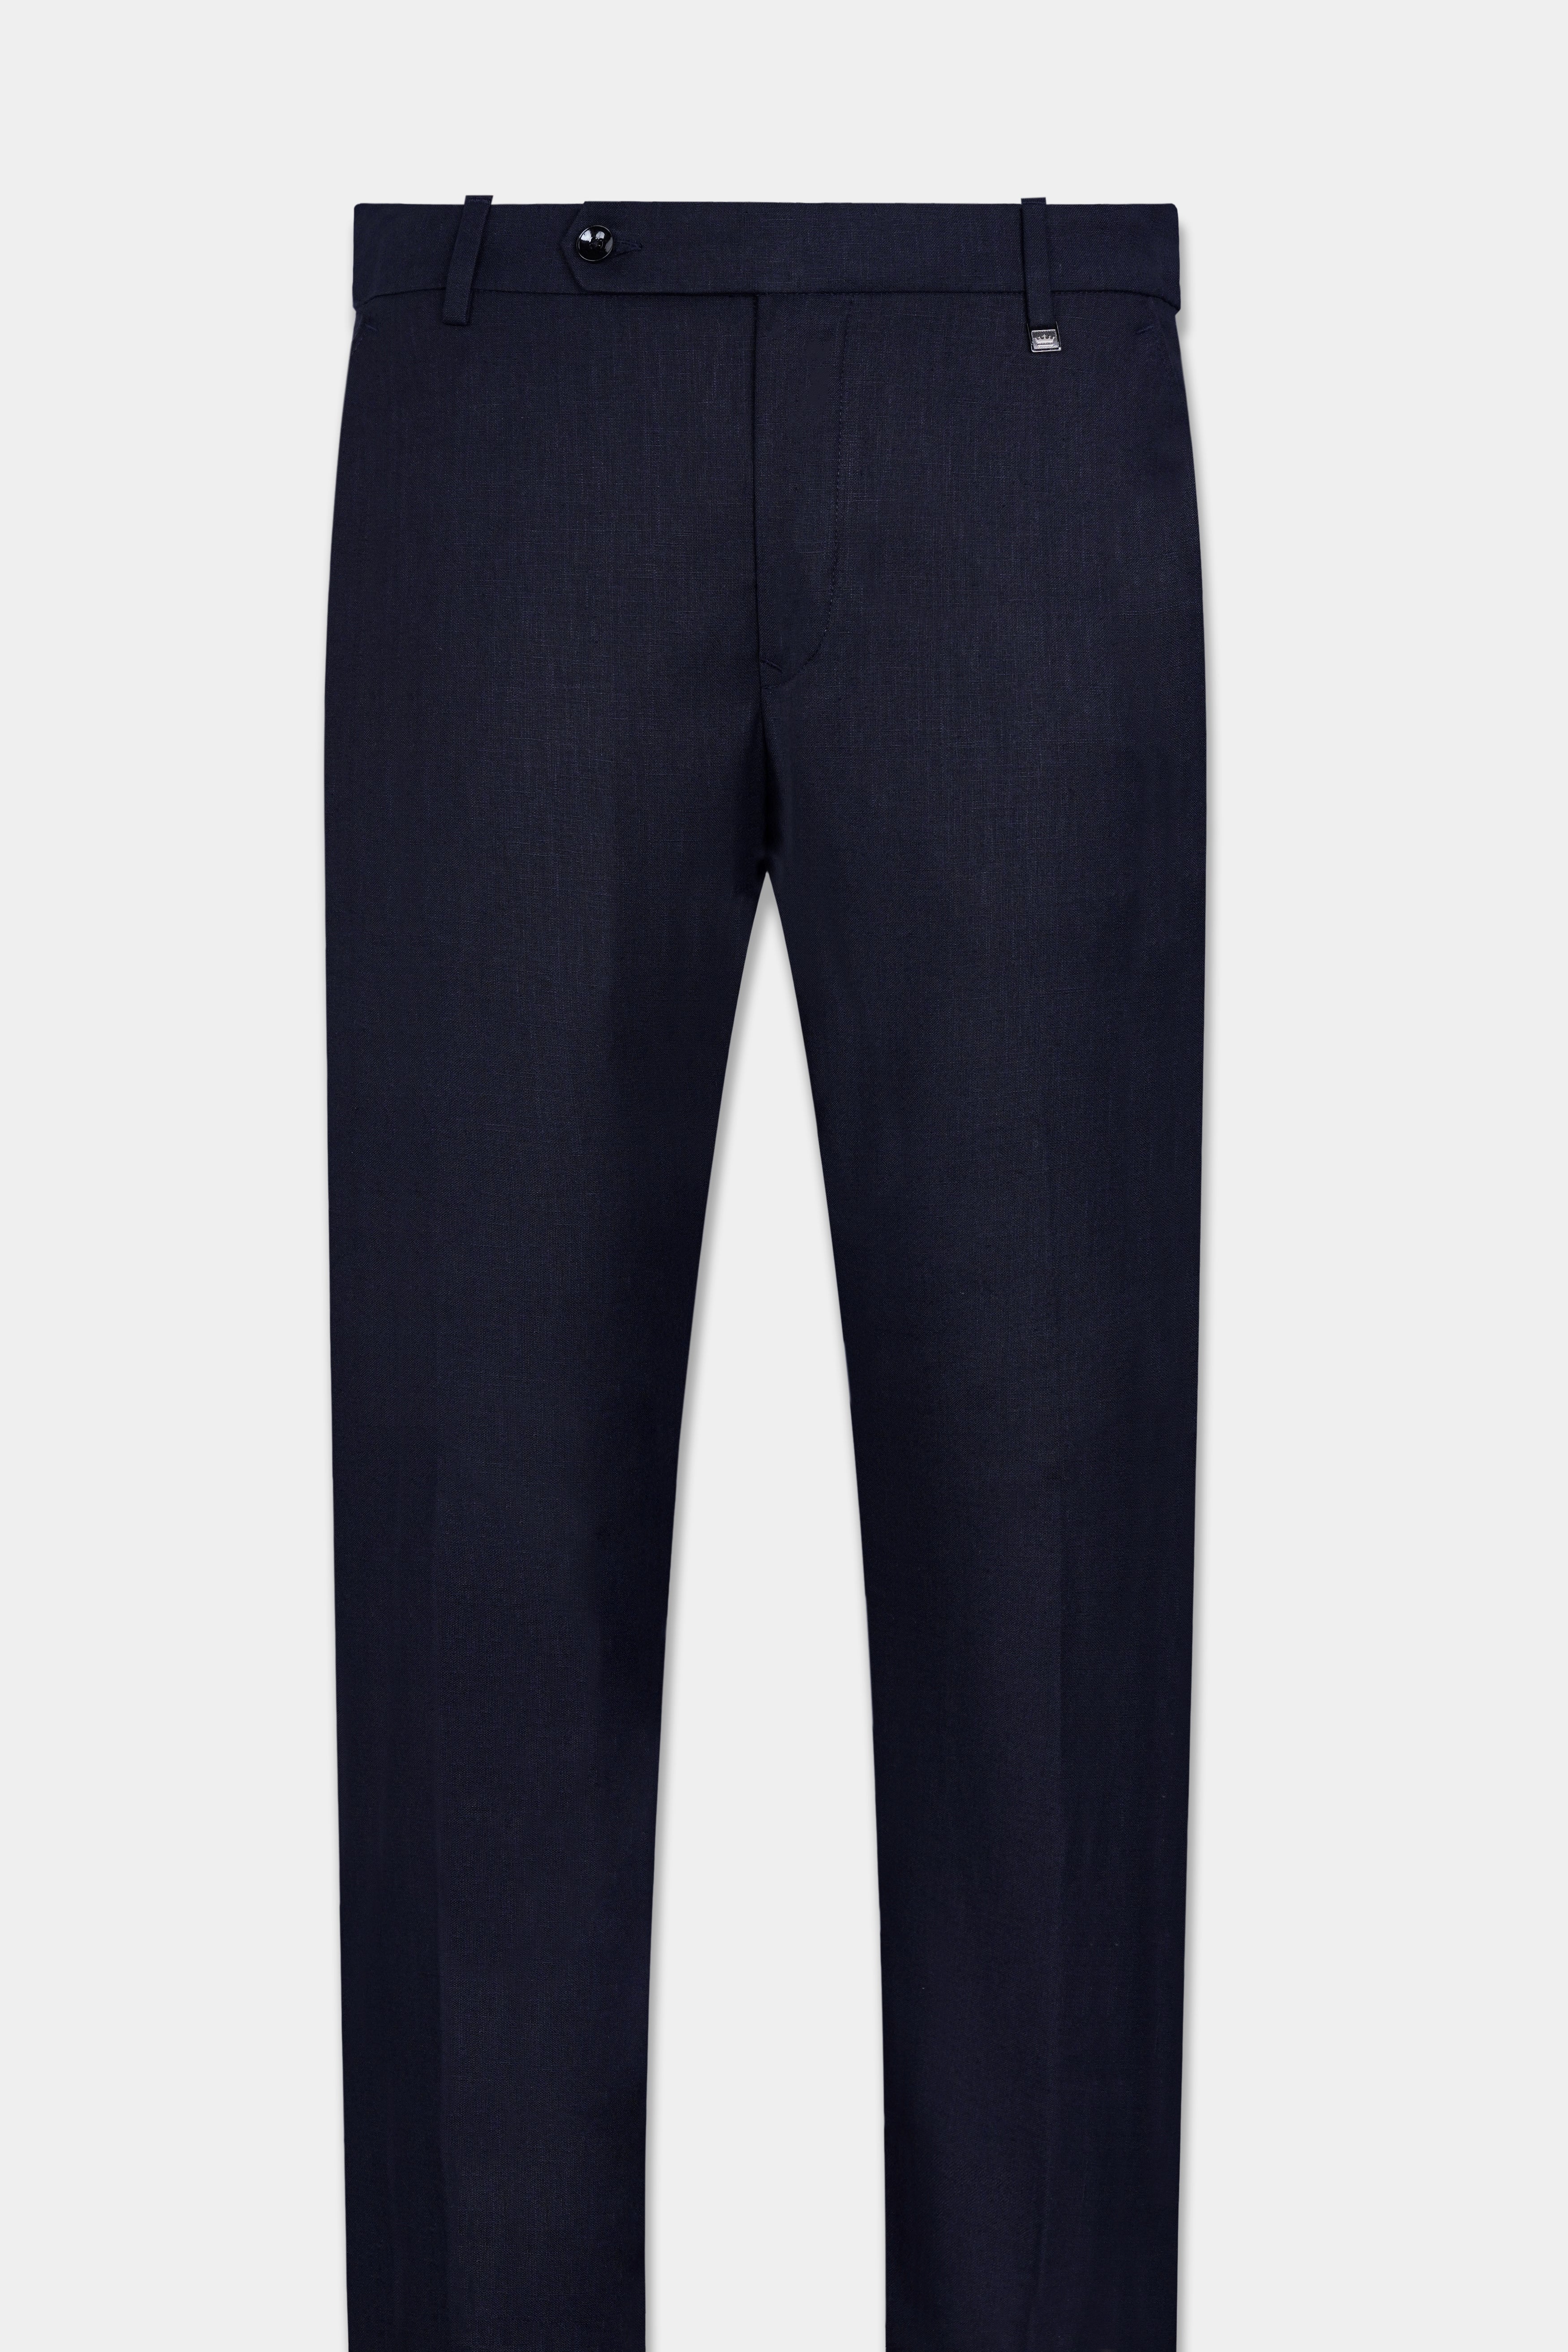 Cinder Blue Premium Cotton Stretchable Waistband Pant